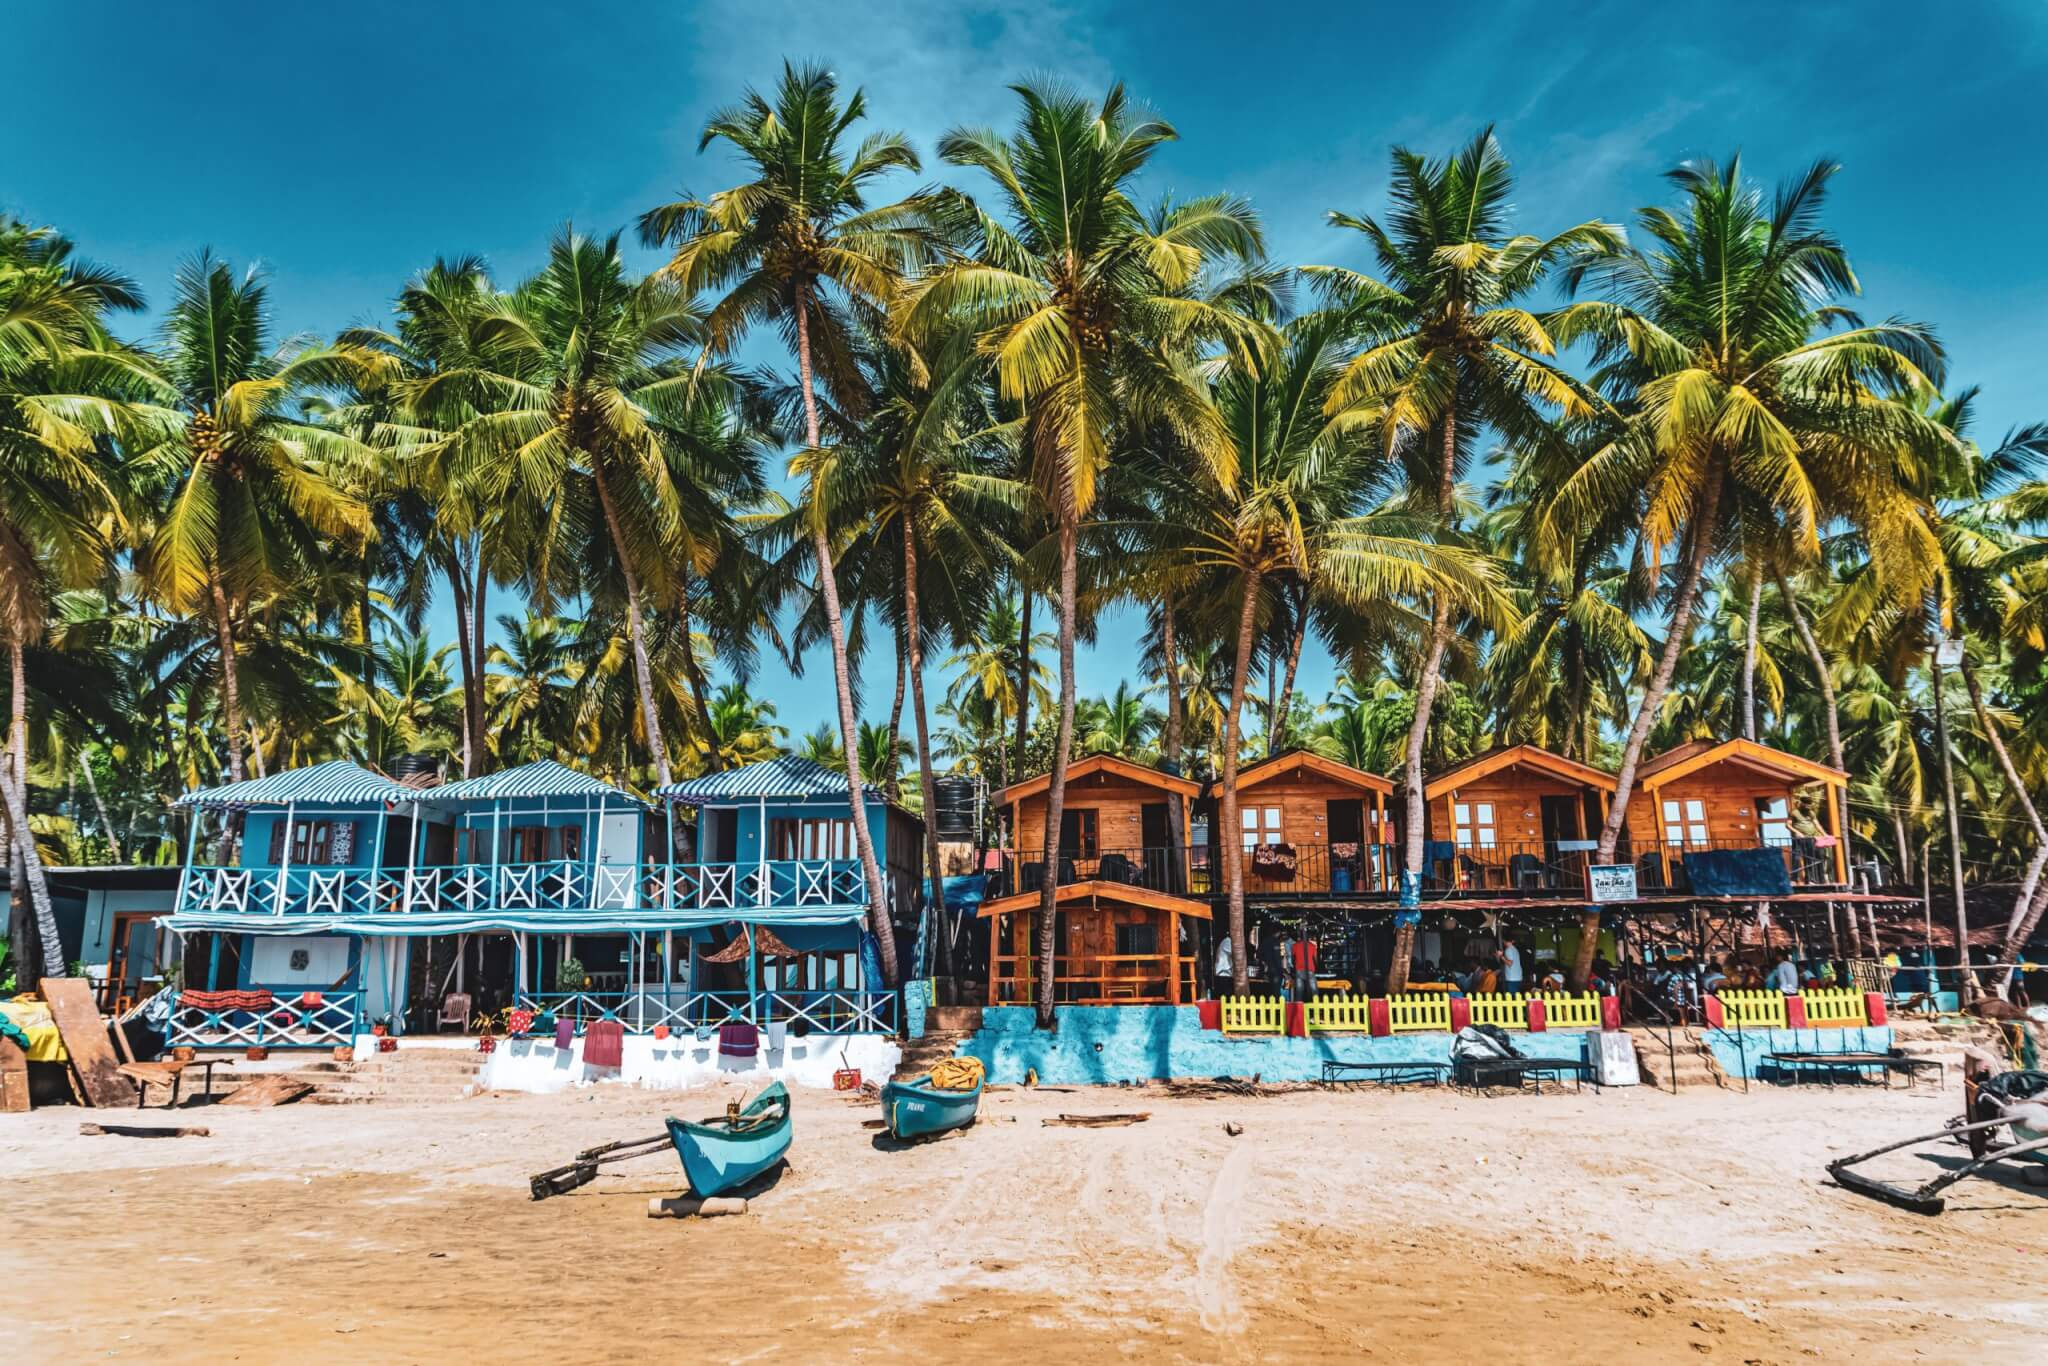 Palolem Beach in Goa, India